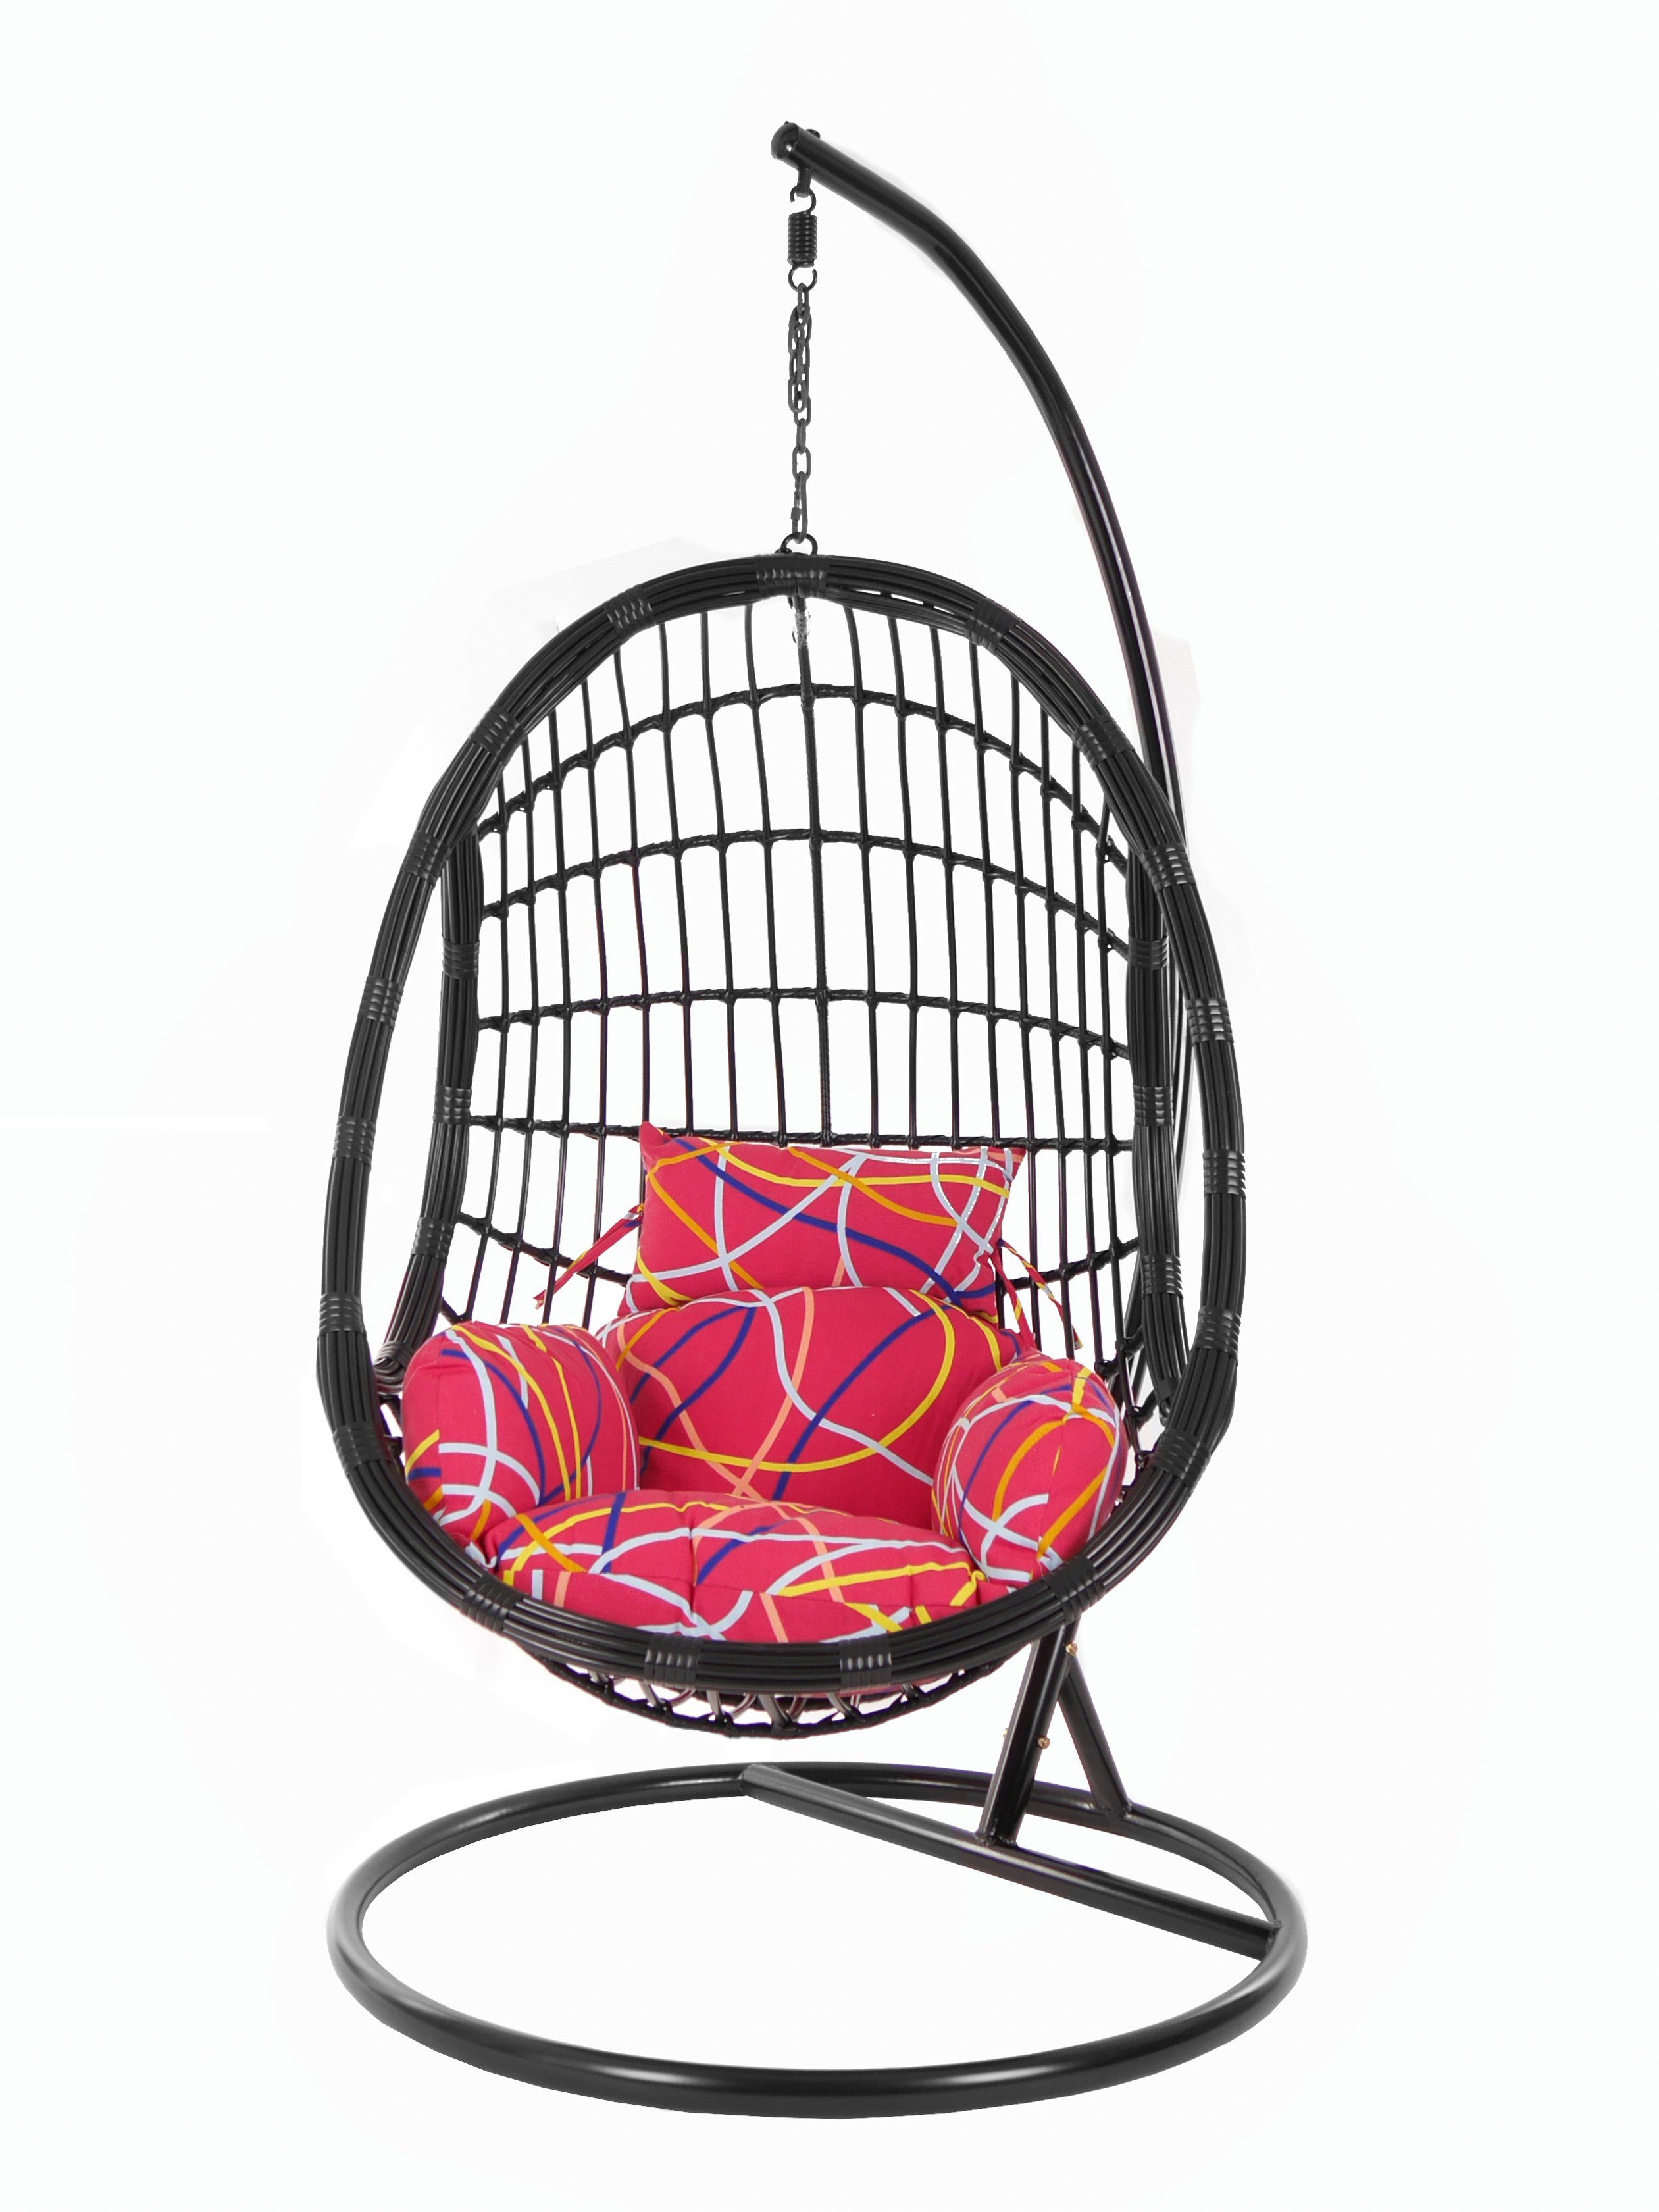 KIDEO Hängesessel PALMANOVA black, (3021 abstract) Schwebesessel, Kissen, Schwarz, und be gemustert Chair, Hängesessel Swing Gestell Muster mit Loungemöbel